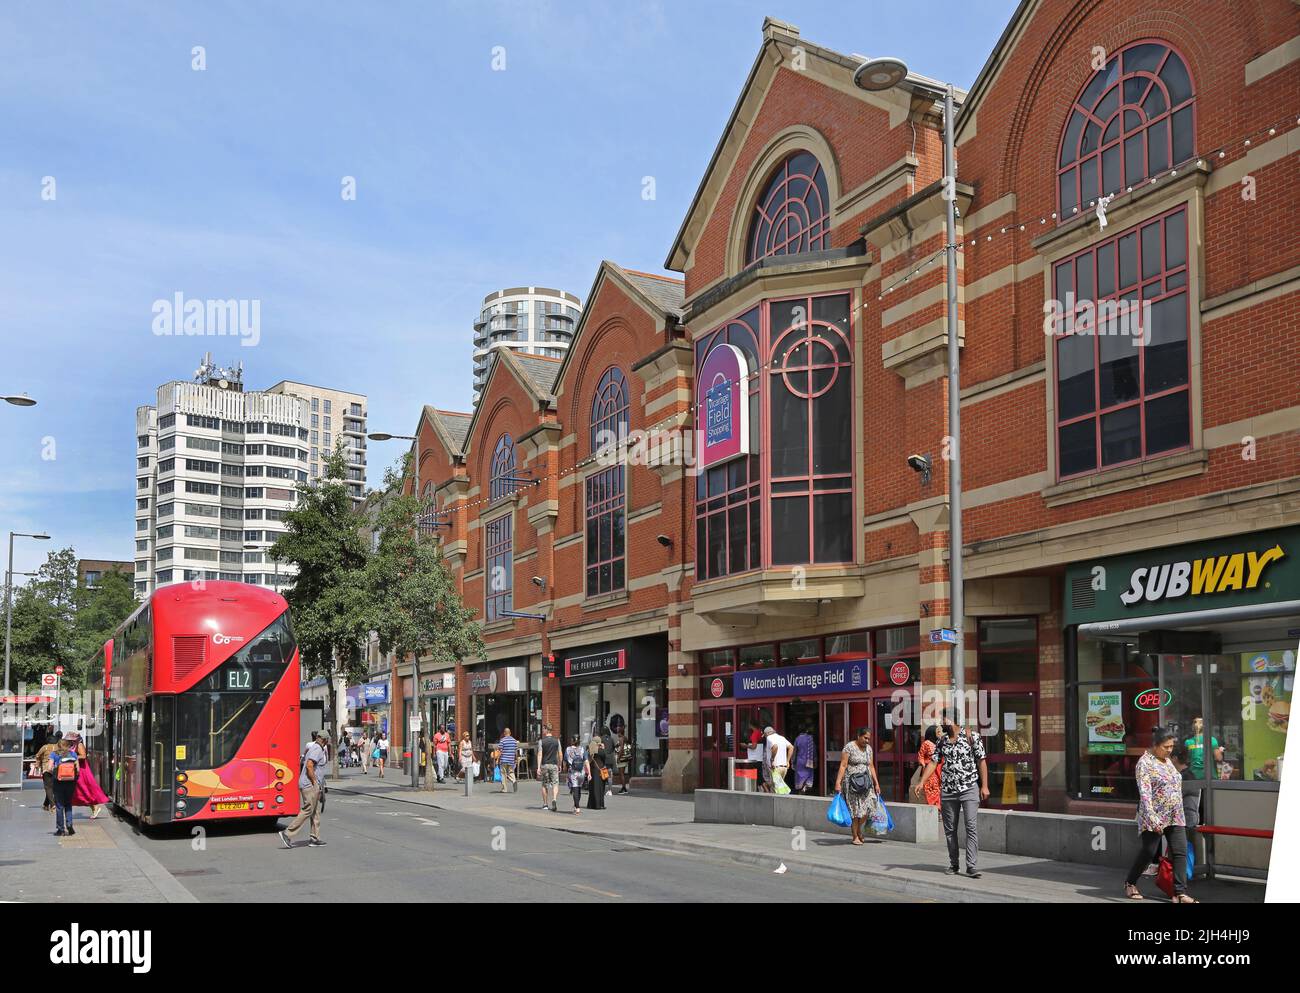 Centre-ville de Barking, Londres, Royaume-Uni. Ripple Road, montre le centre commercial Vicarage Field (à droite). Environnement très fréquenté, dans la rue High Street. Jour d'été. Banque D'Images